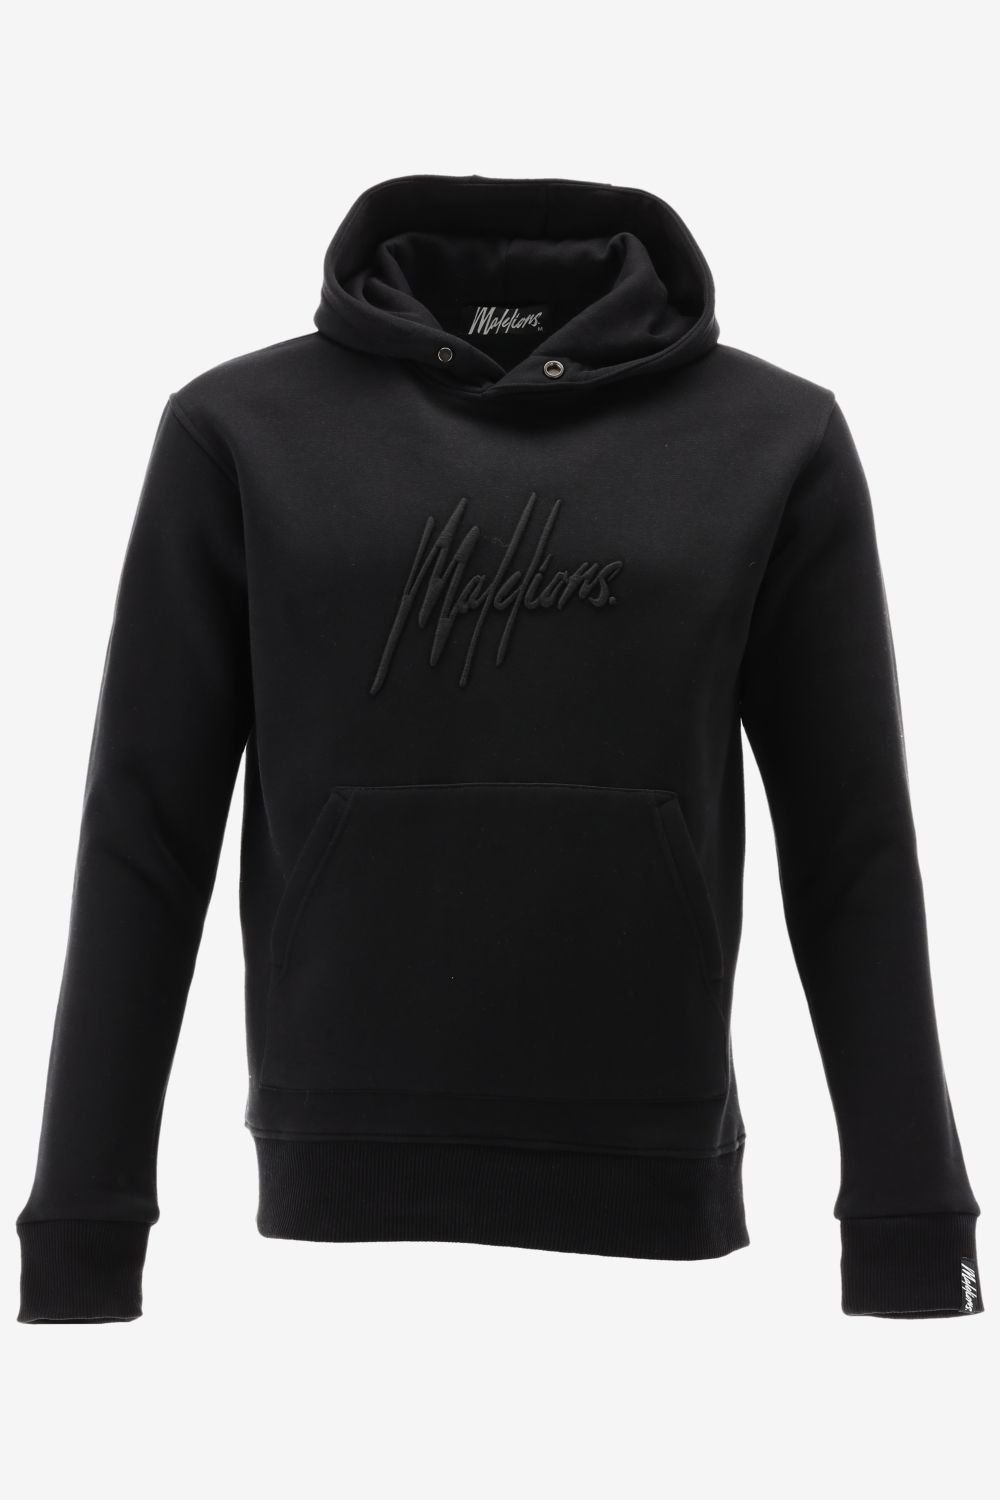 Malelions hoodie essentials hoodie maat S